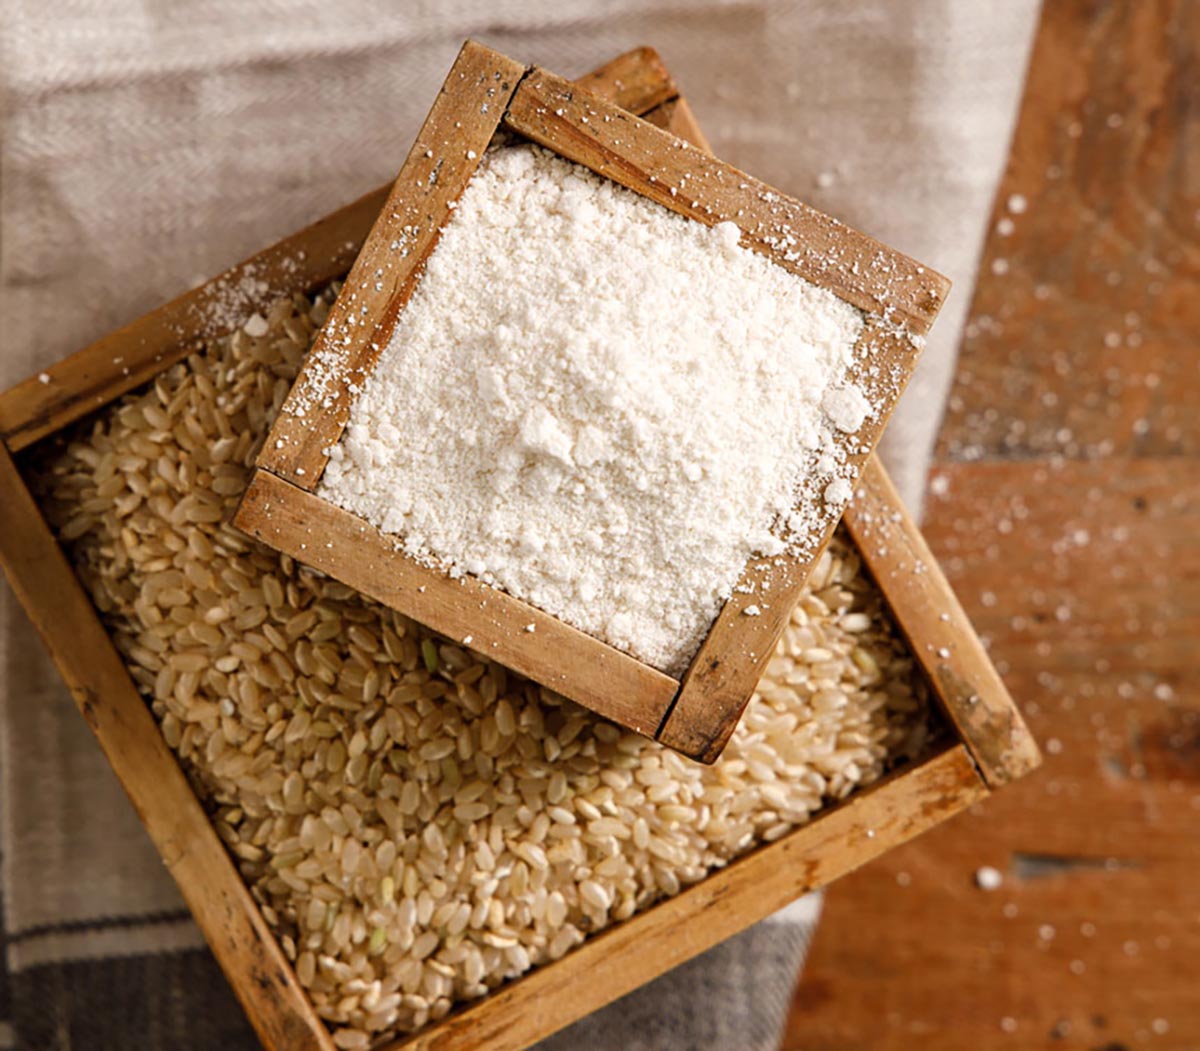 옛날 쌀집에서 사용하던 되에 모습으로 현미쌀과 습식가루가 담겨져있다.